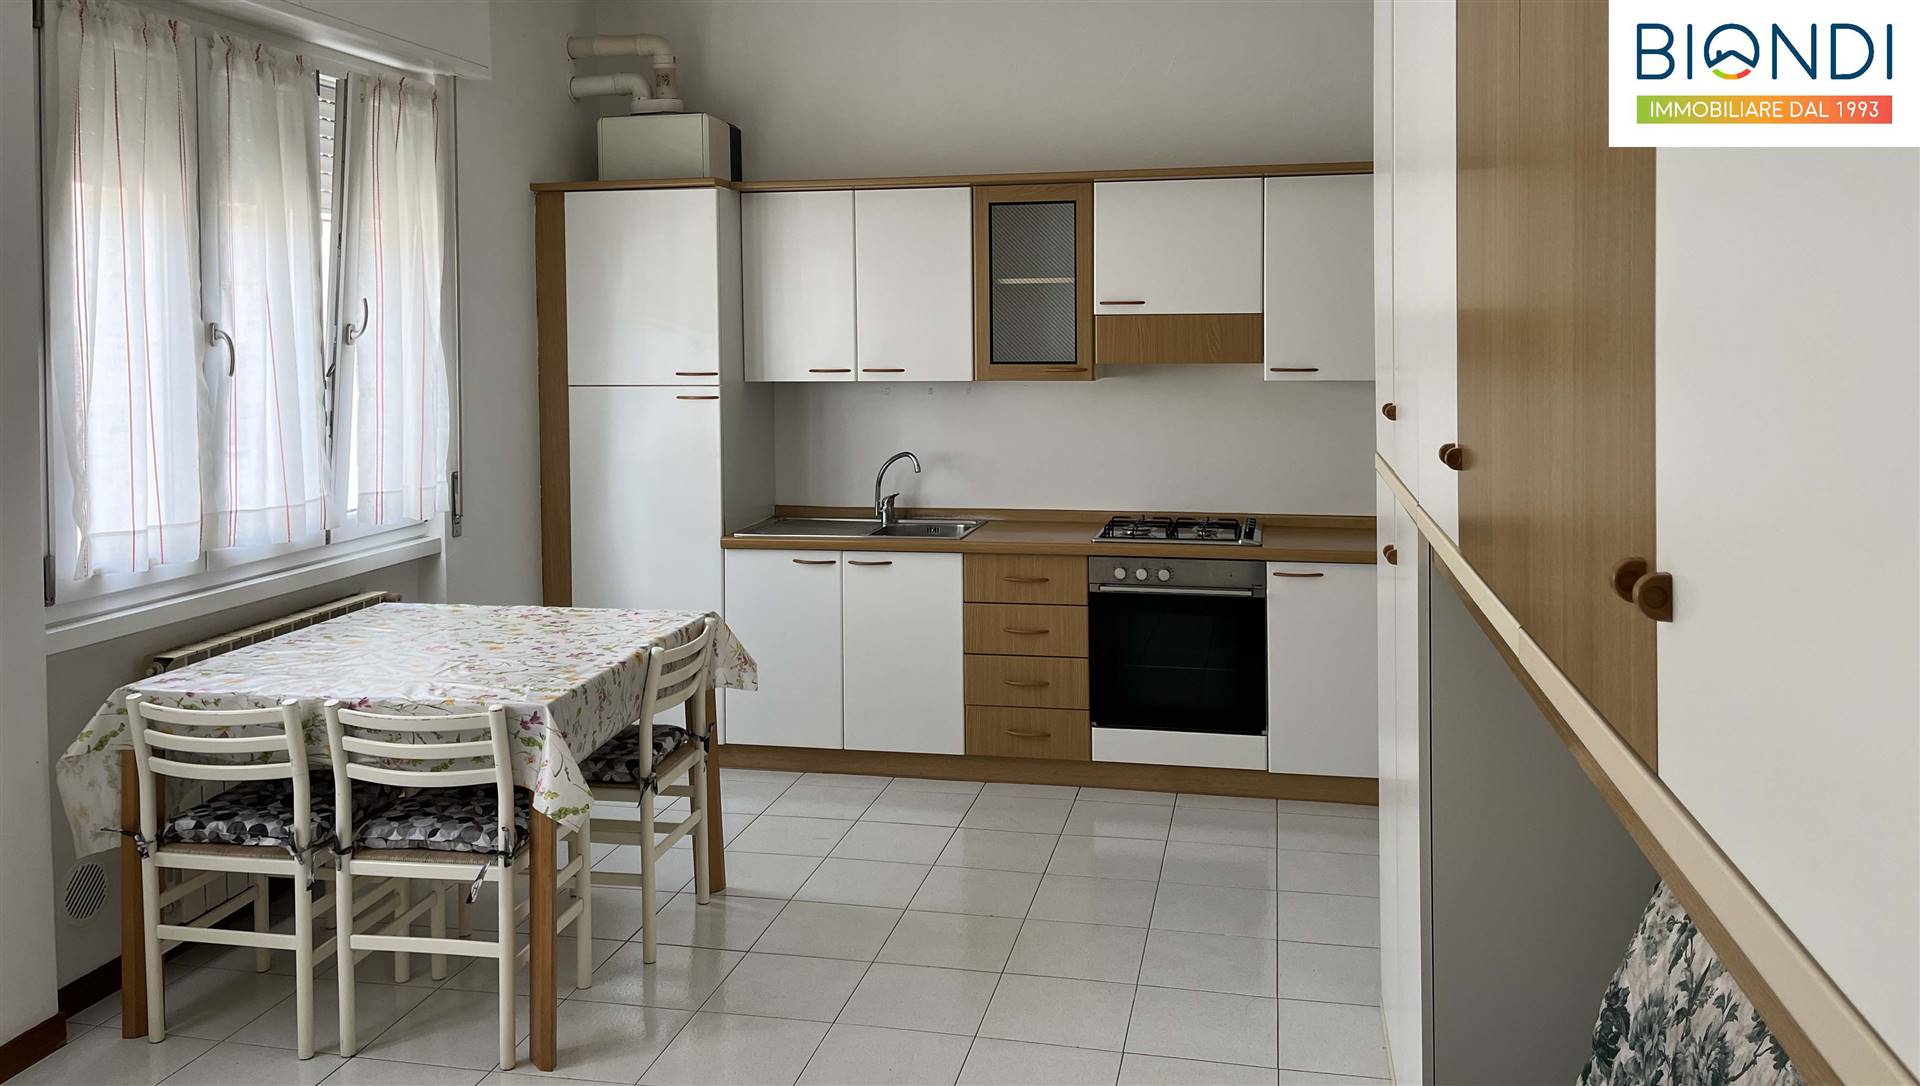 Appartamento in vendita a Alzano Lombardo, 1 locali, prezzo € 55.000 | PortaleAgenzieImmobiliari.it